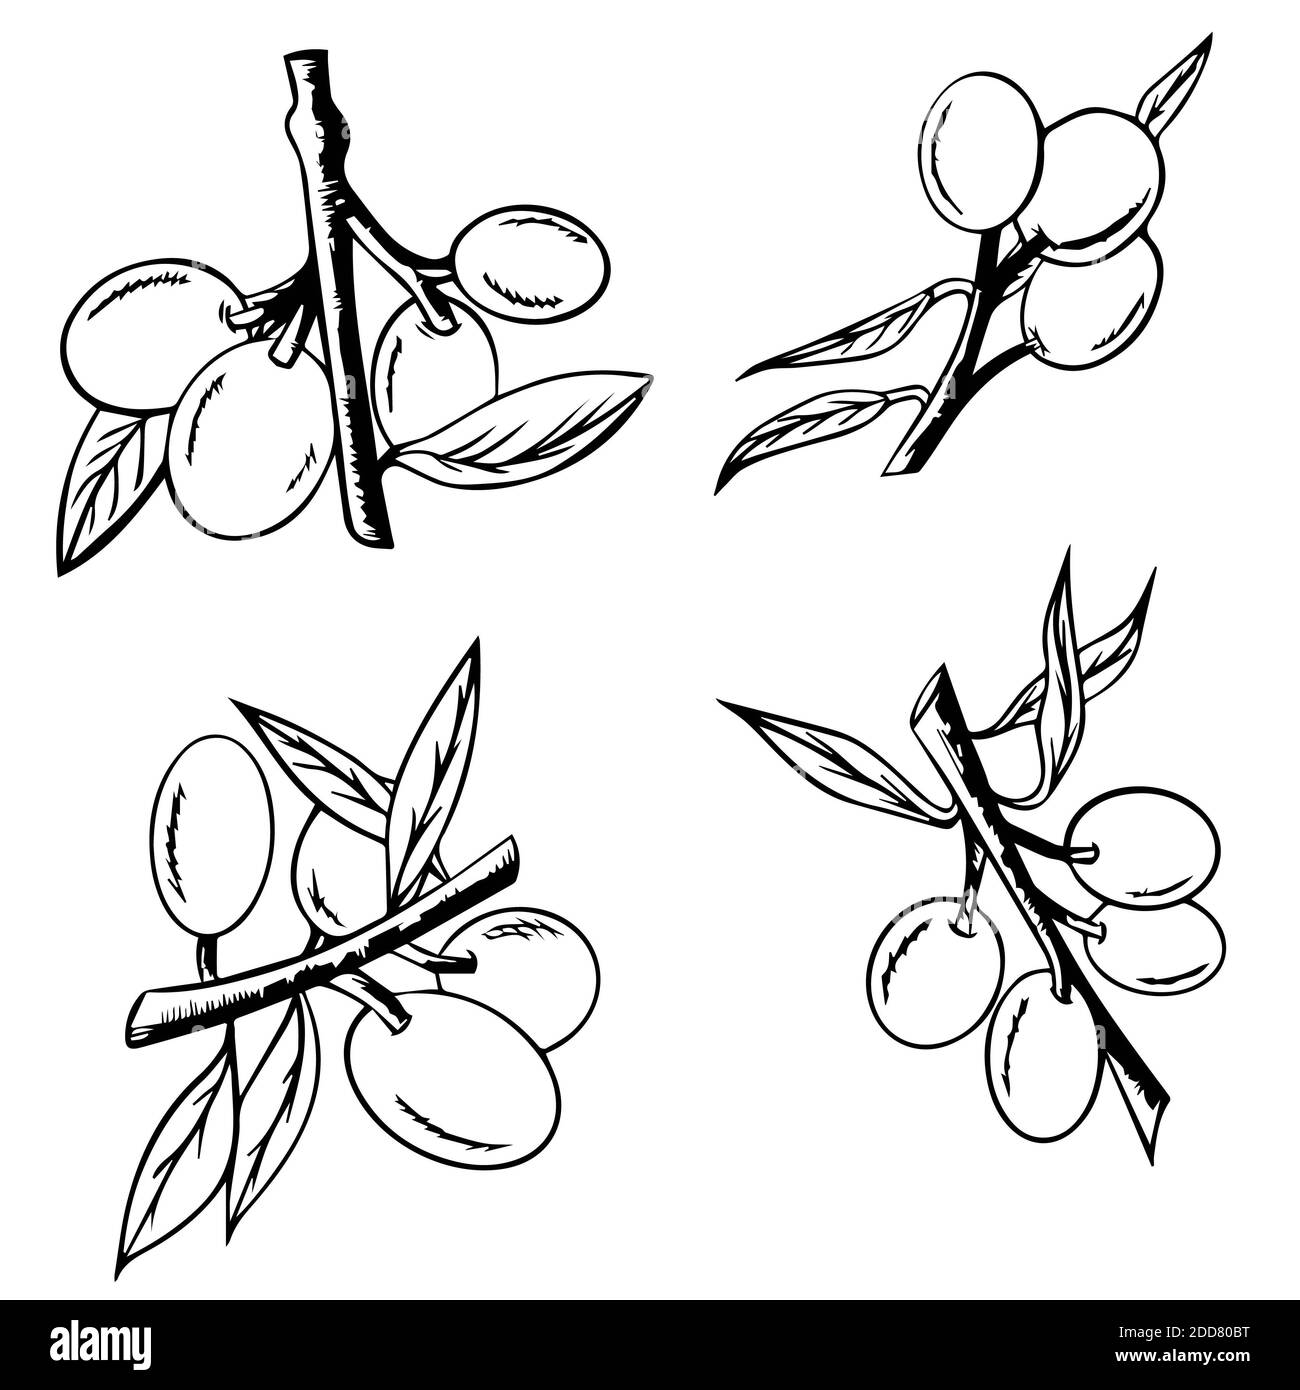 Albero abbozzato di ramificazione con olive, rami di oliva isolati su sfondo bianco, vettore disegno a mano. Simbolo o logo per l'olio d'oliva Foto Stock